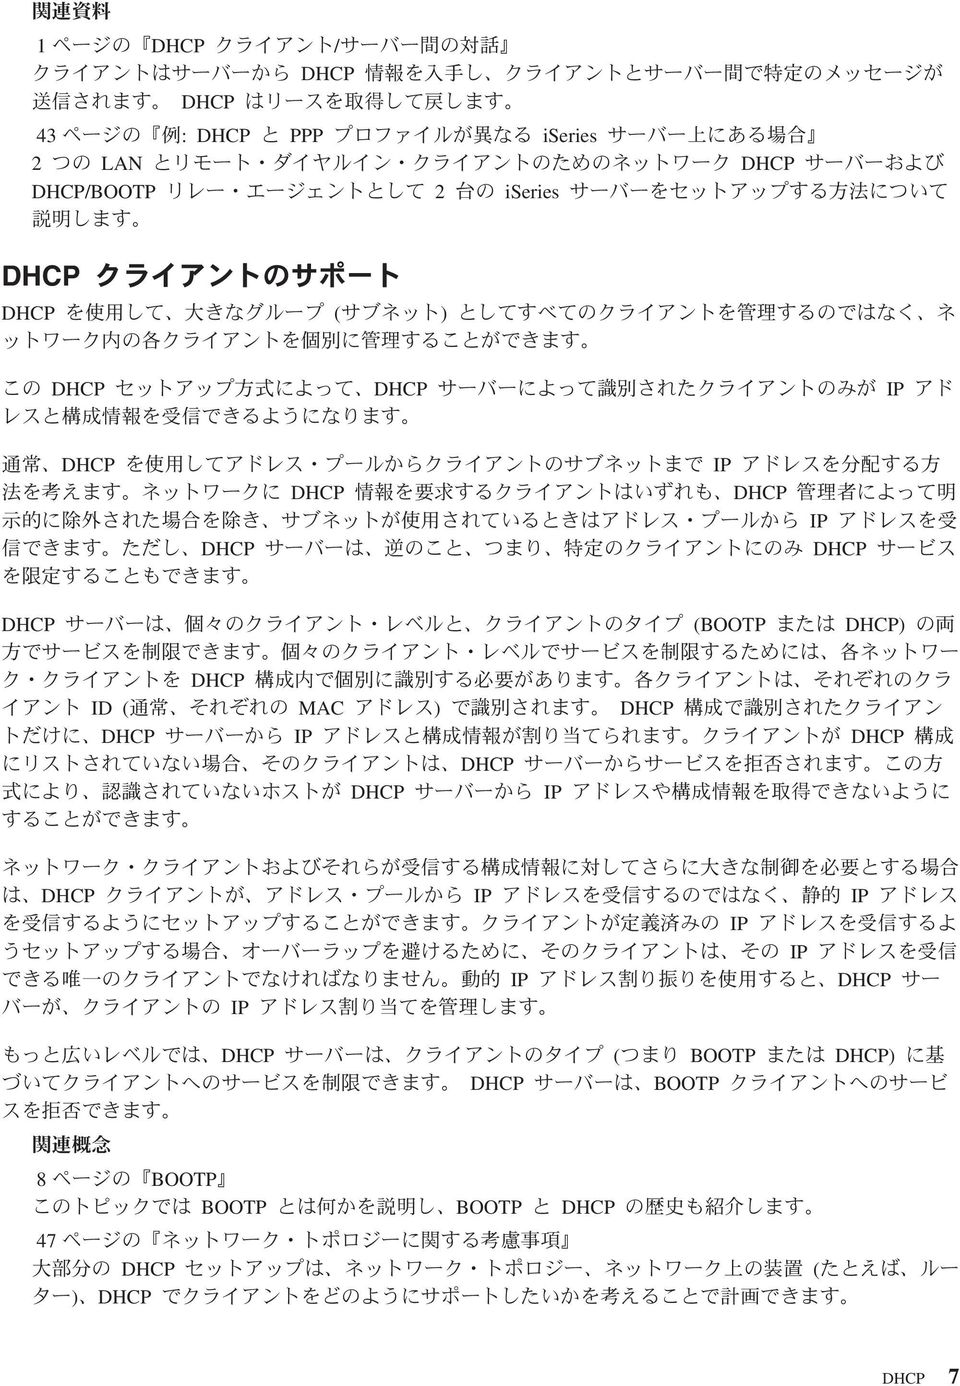 DHCP ID ( MAC ) DHCP DHCP IP DHCP DHCP DHCP IP DHCP IP IP IP IP IP DHCP IP